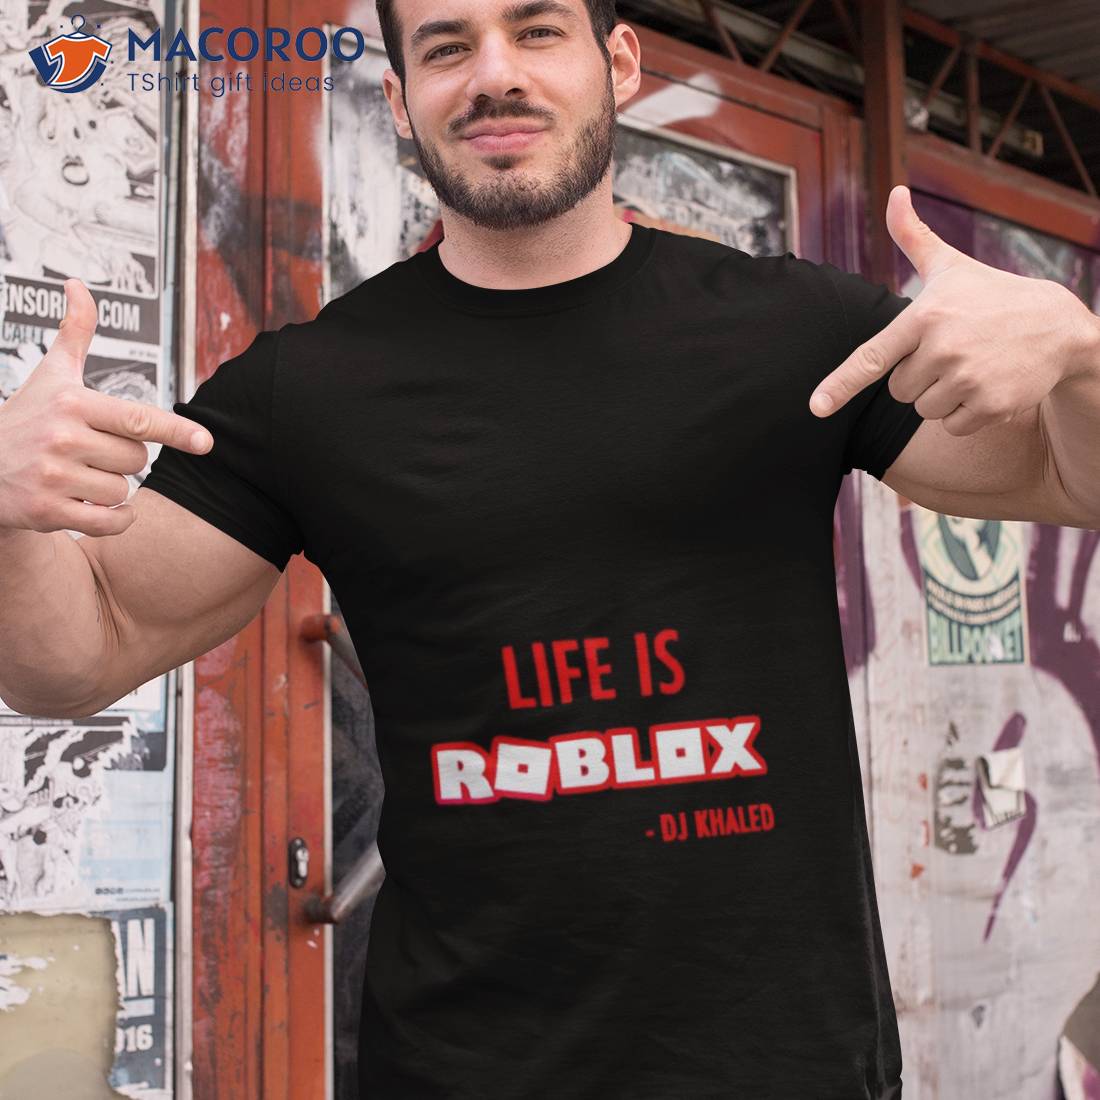 19 ideas de Roblox camisetas  camisetas, roblox, imagenes de camisetas